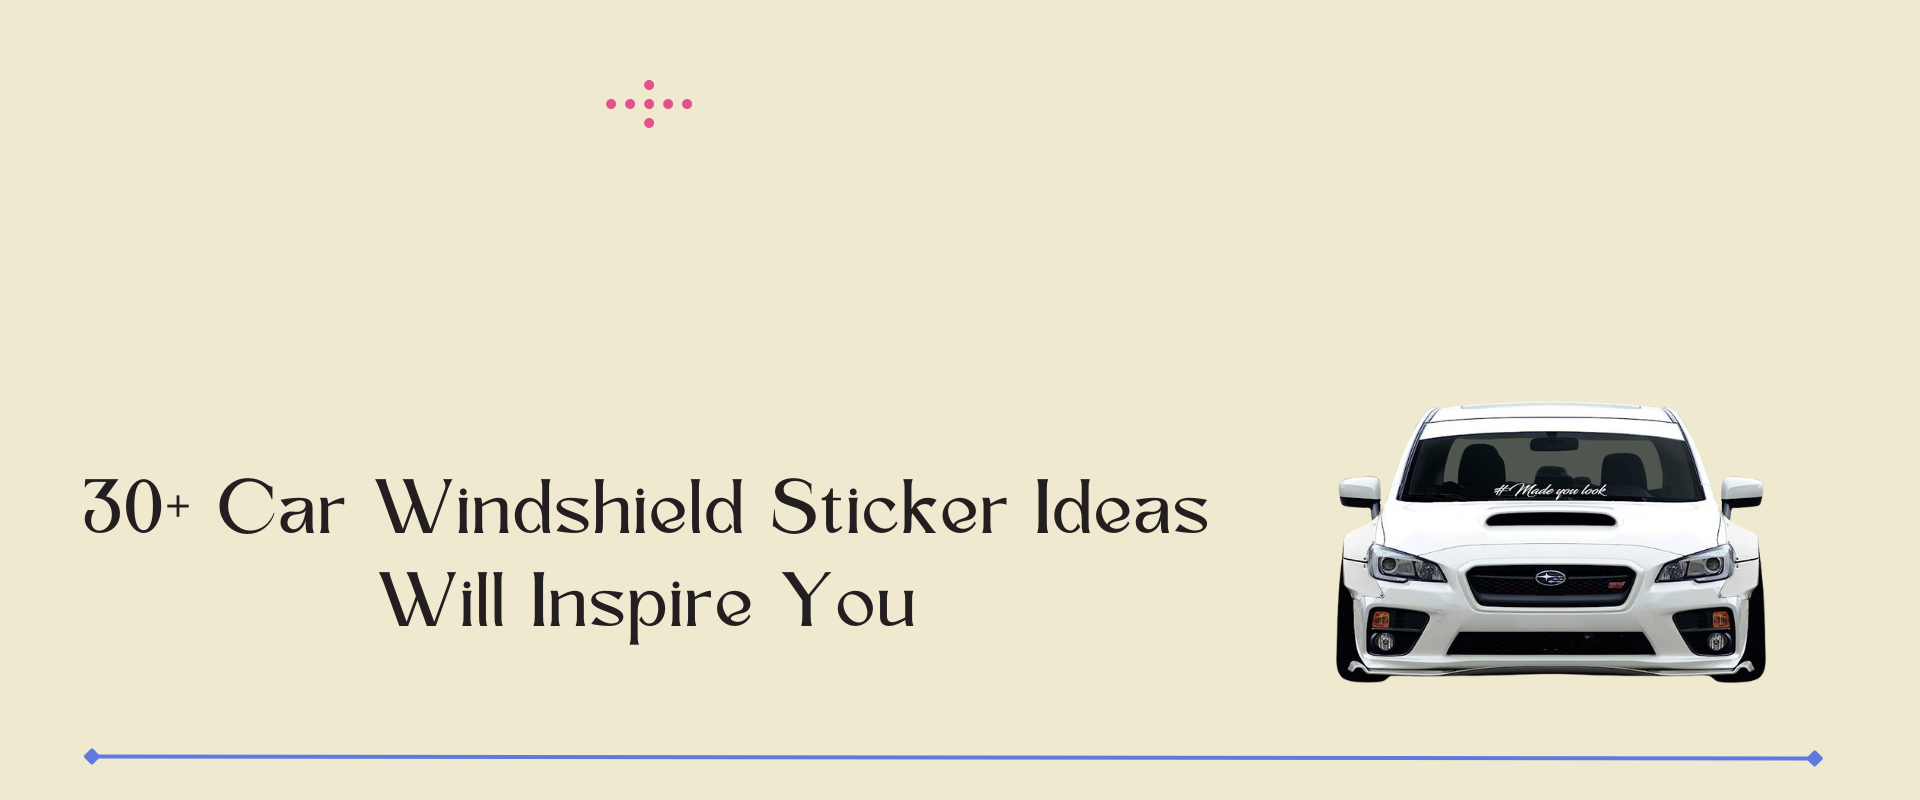 windshield sticker ideas